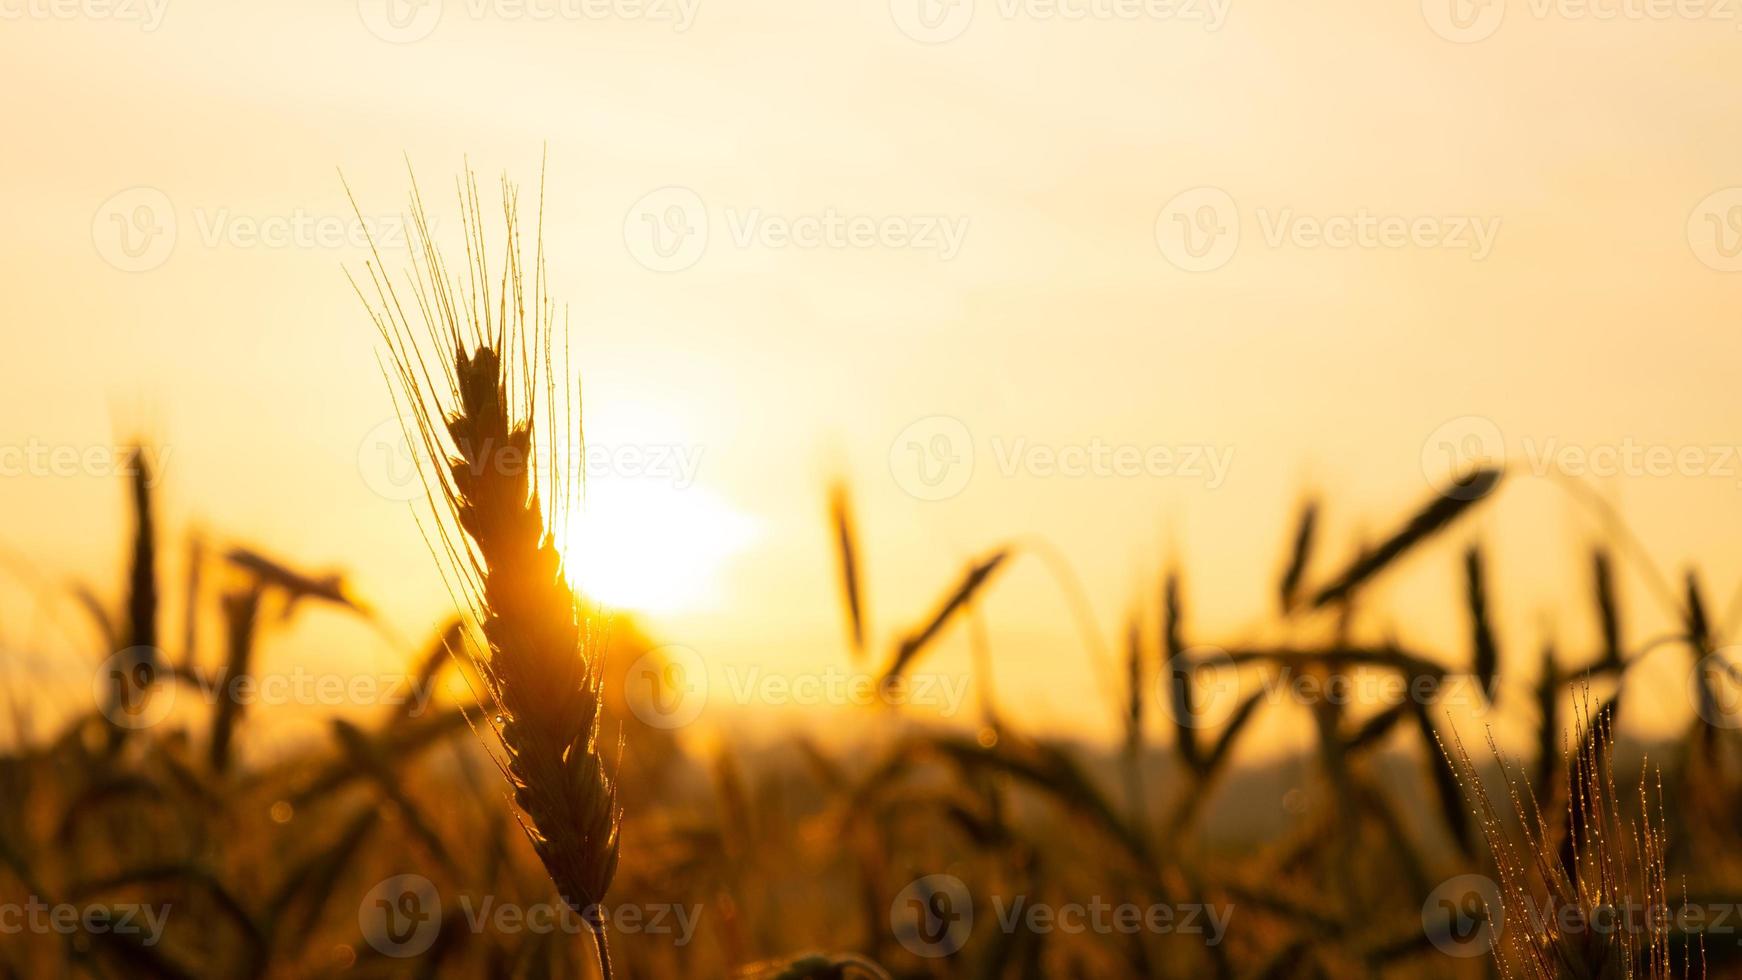 épillets de blé en gros plan dans les rayons du soleil jaune chaud au lever du soleil, aube sur un champ de blé à la campagne photo